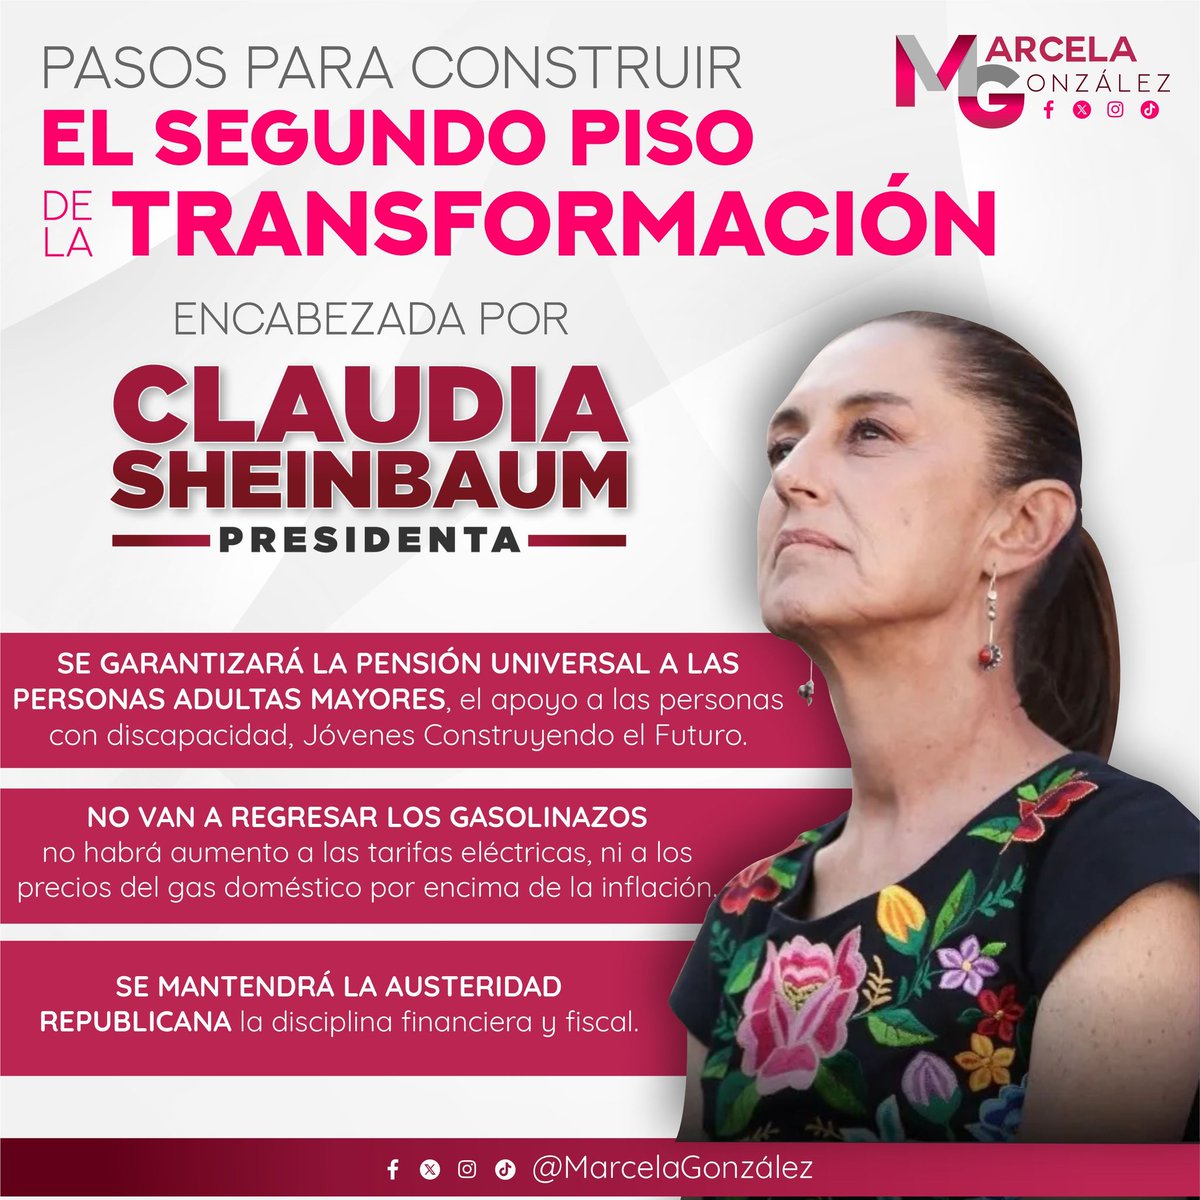 Con la Dra. Claudia Sheinbaum tendremos a la primer mujer presidenta de la historia, quien gobernará a favor del bienestar del pueblo de México. ¡Juntos consolidaremos la transformación del país! 🫶🏻

#LaEsperanzaNosUne